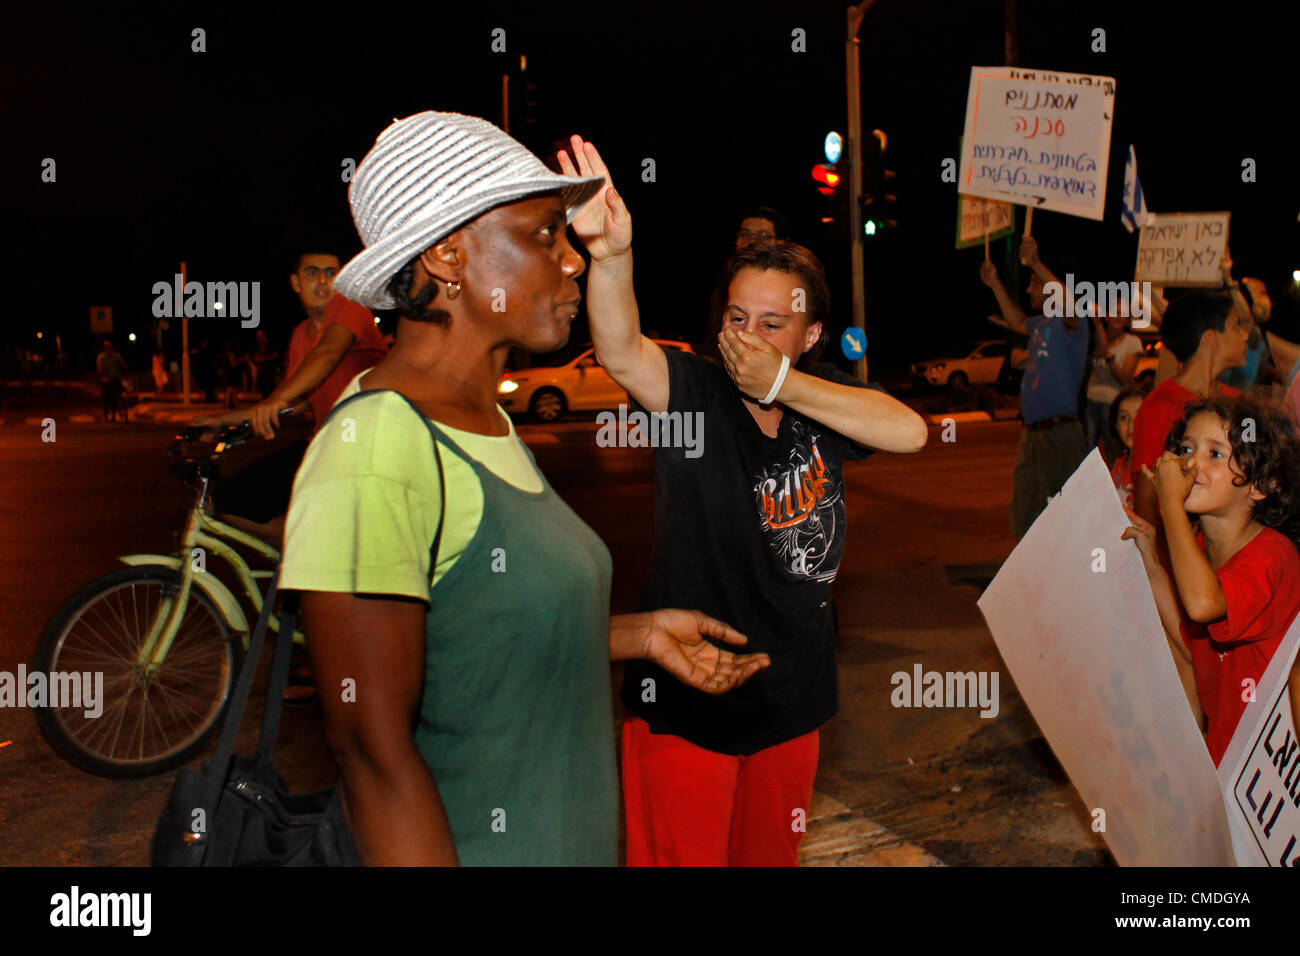 Una donna israeliana tiene il respiro davanti a un migrante africano per implicare che la presenza di migranti africani è un pericolo per la salute durante una protesta contro i lavoratori migranti africani e i richiedenti asilo che vivono nella periferia meridionale di Tel Aviv Israele Foto Stock